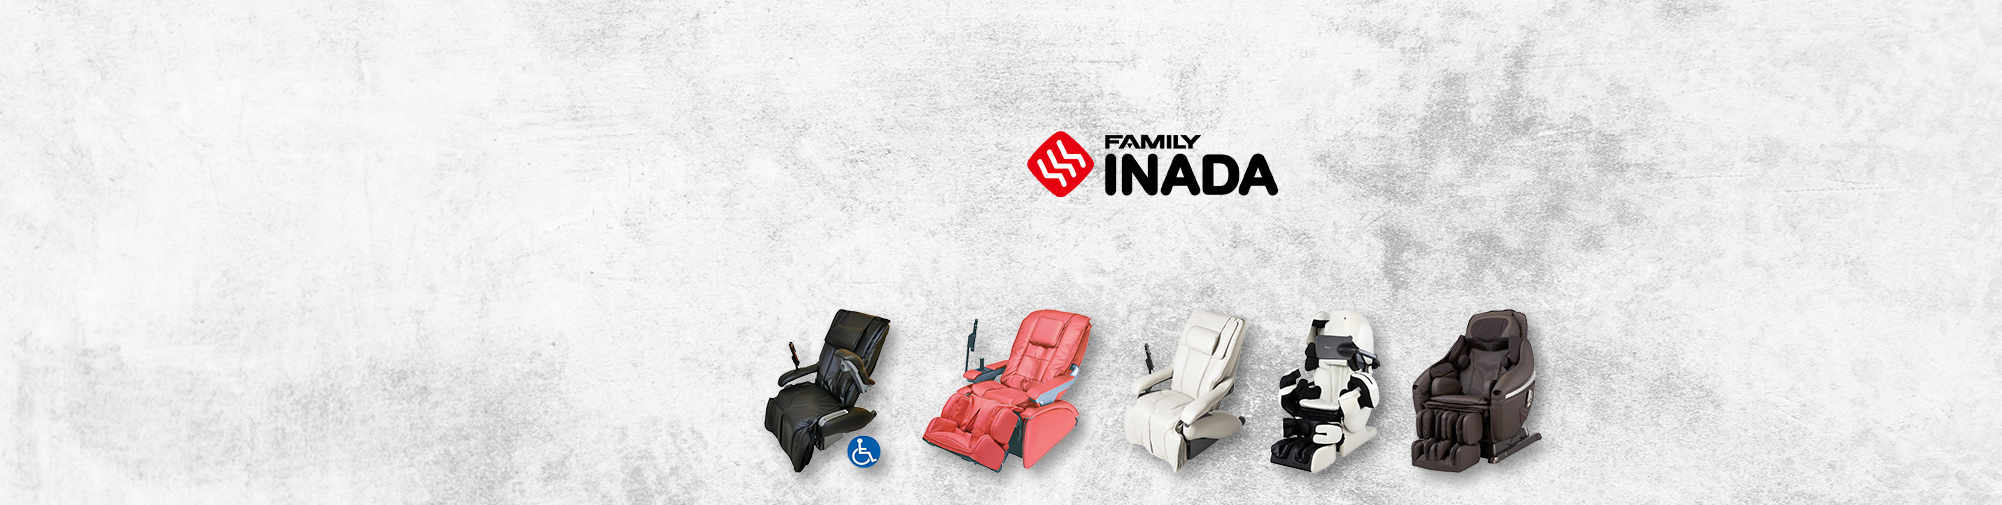 Family Inada – tradiční japonská firma | Masážní křeslo World